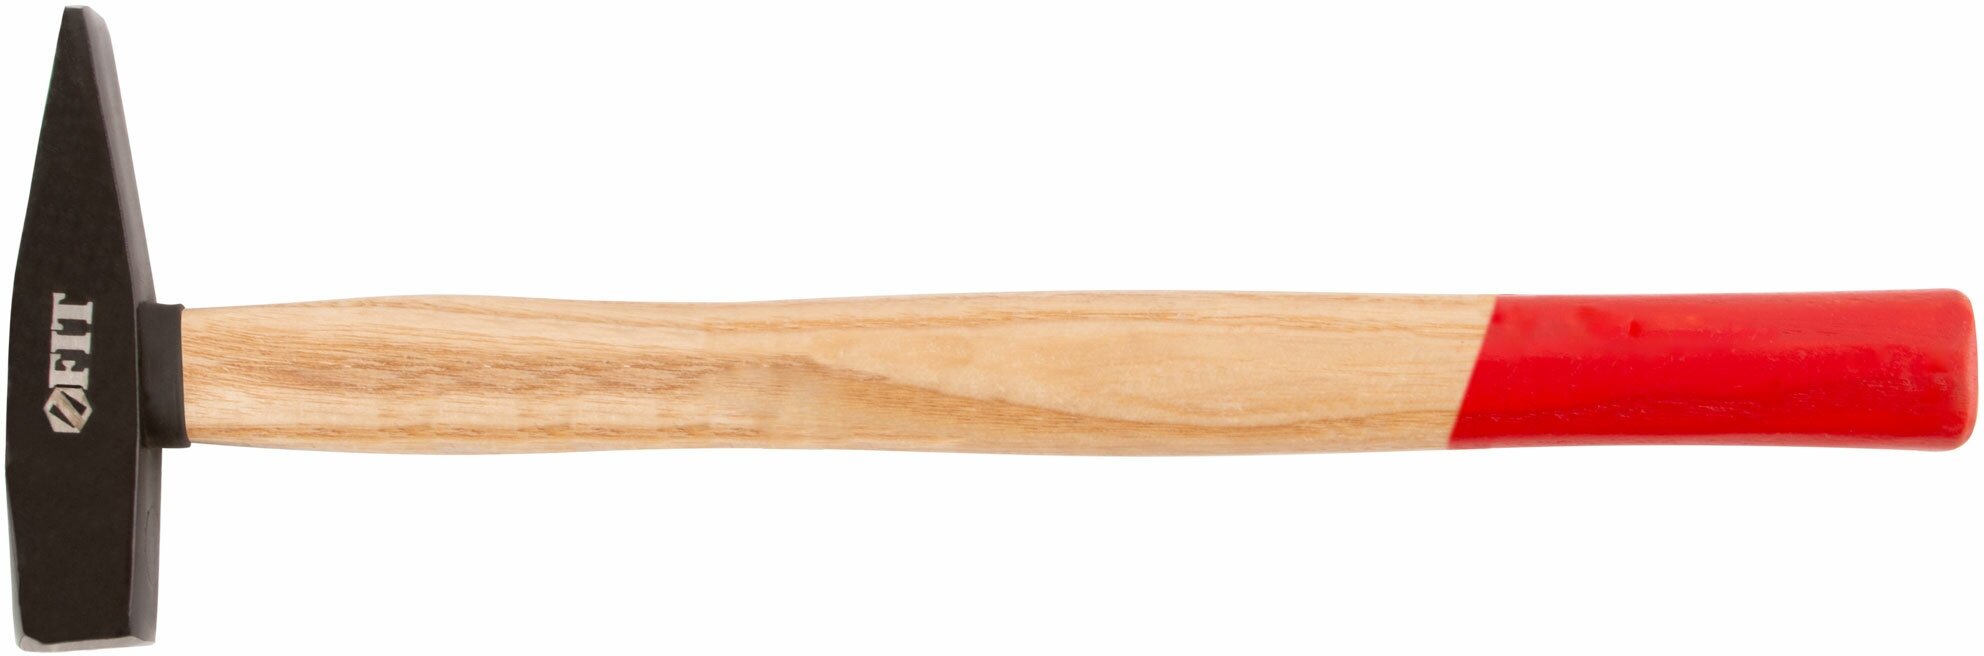 Молоток кованый, деревянная ручка 200 гр.